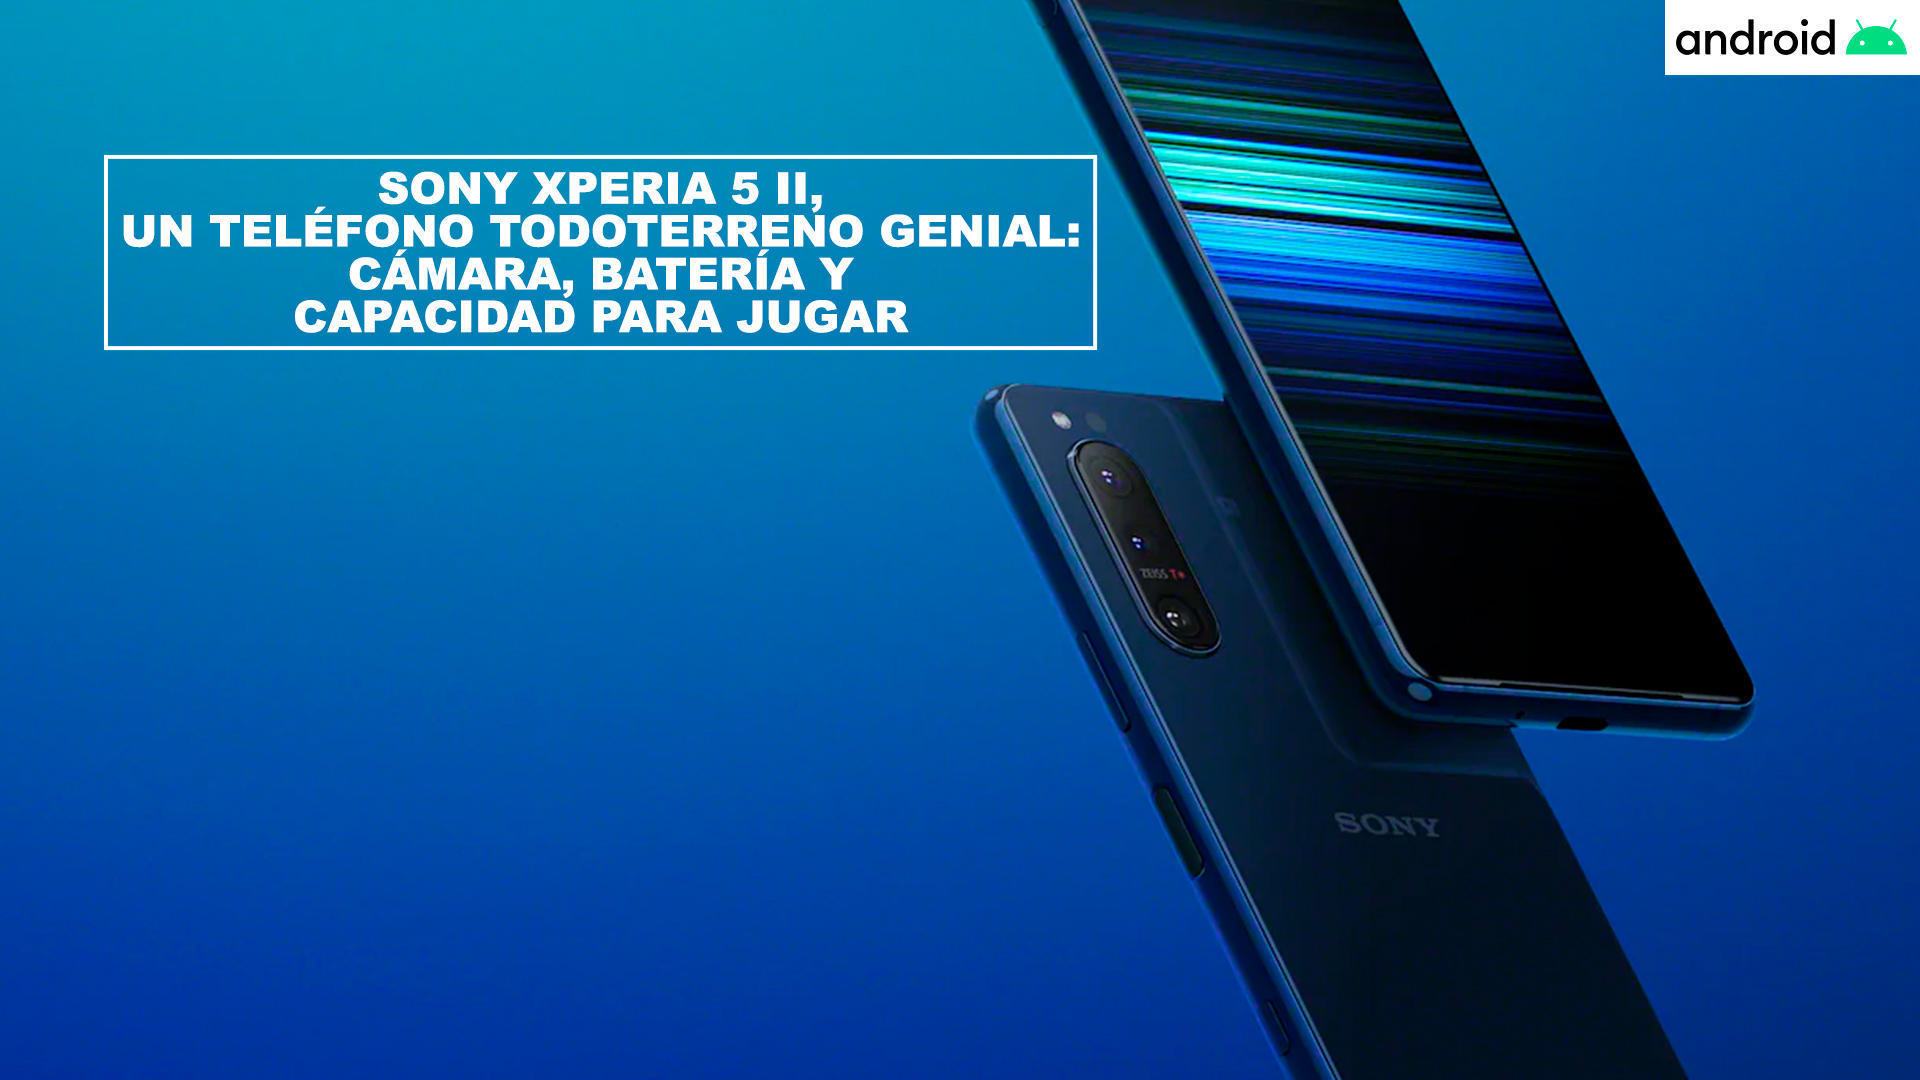 Sony Xperia 5 II, un telfono todoterreno genial: cmara, batera y capacidad para jugar